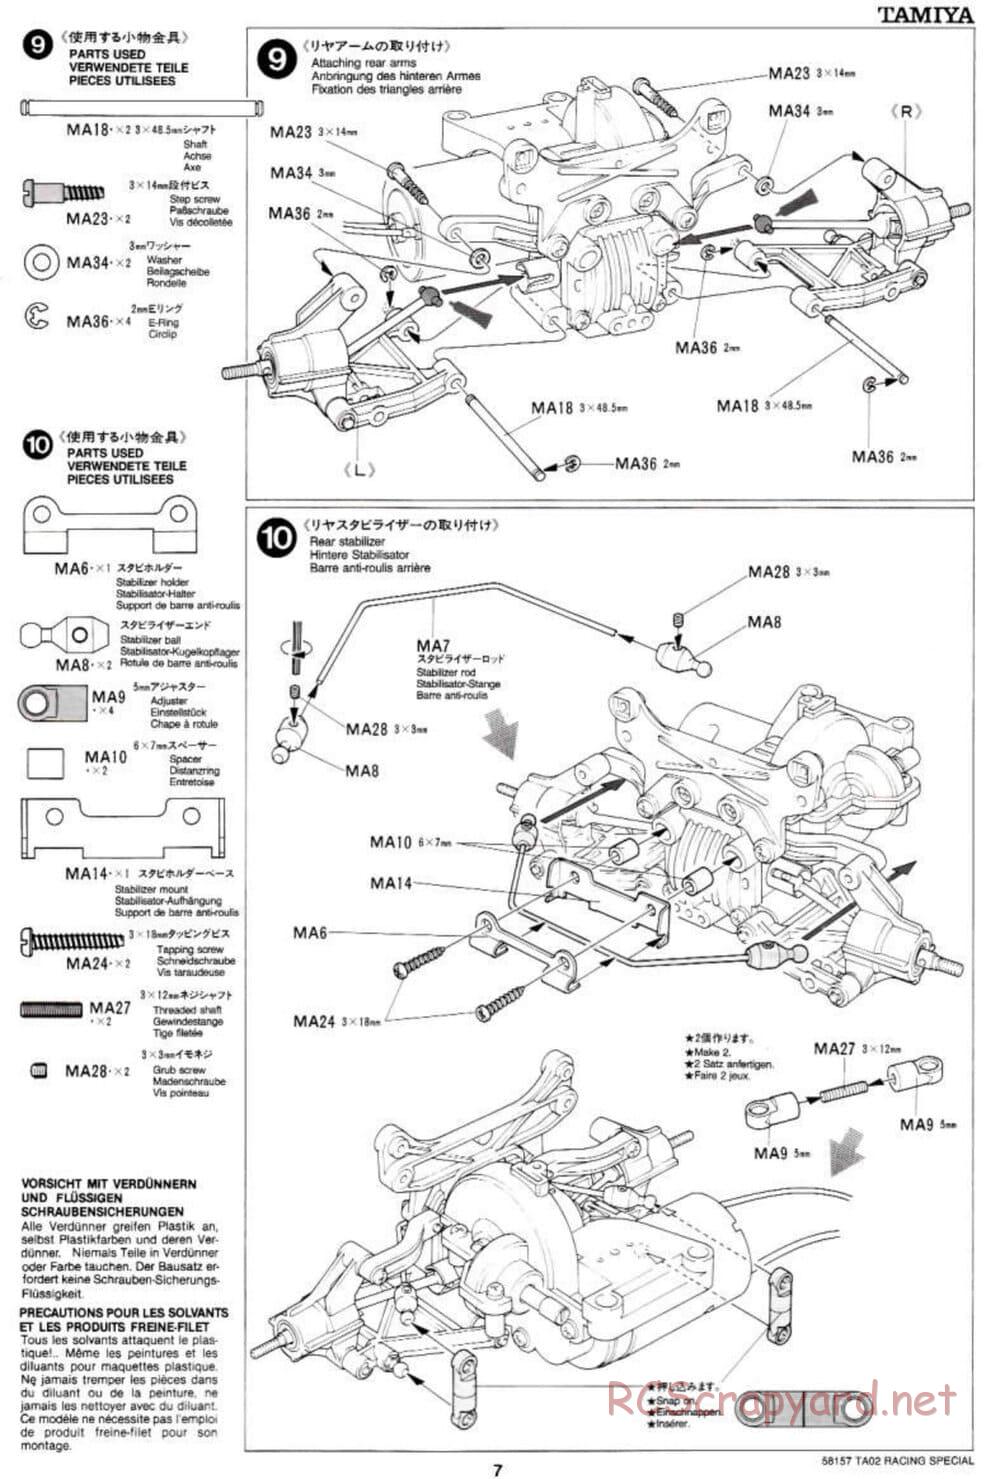 Tamiya - TA-02RS Chassis - Manual - Page 7